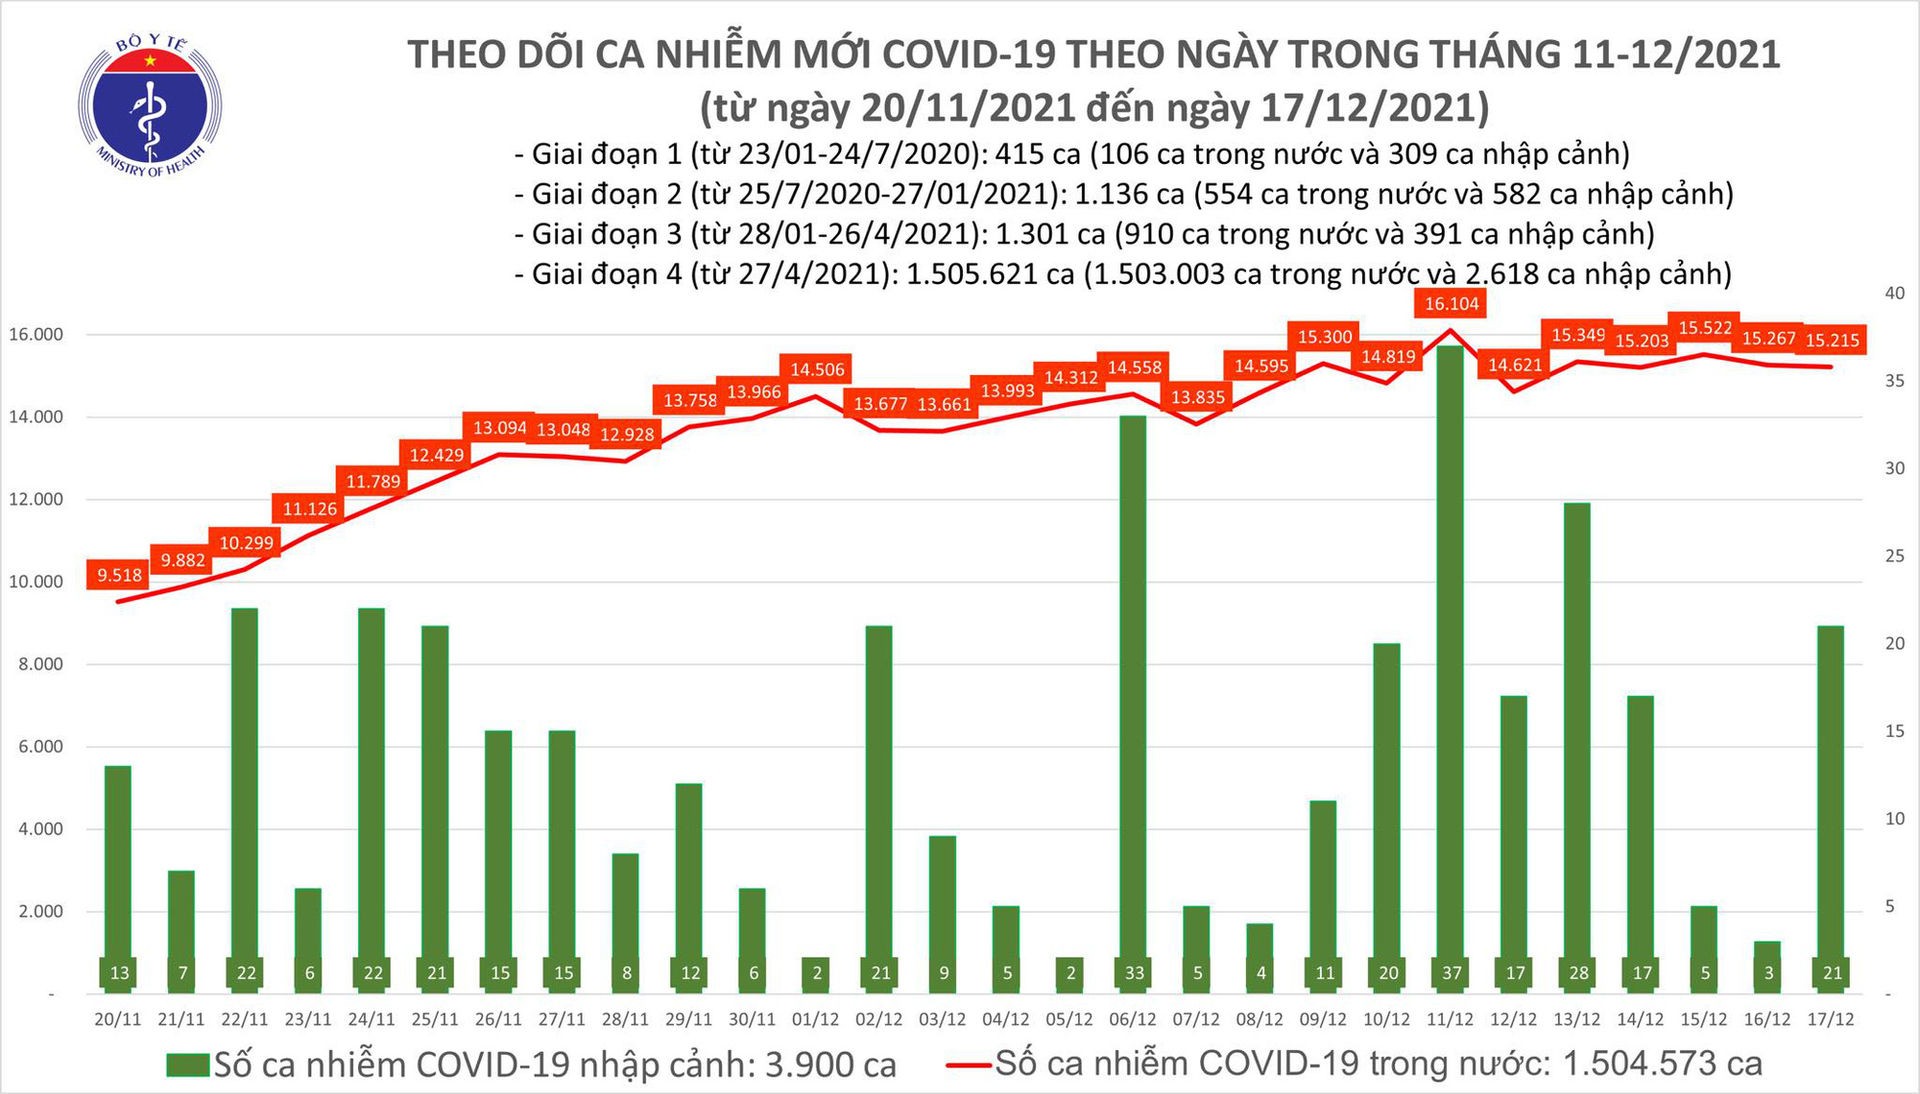 Ngày 17/12: Có 15.236 ca mắc COVID-19, số bệnh nhân khỏi kỷ lục với hơn 31.000 ca - Ảnh 1.